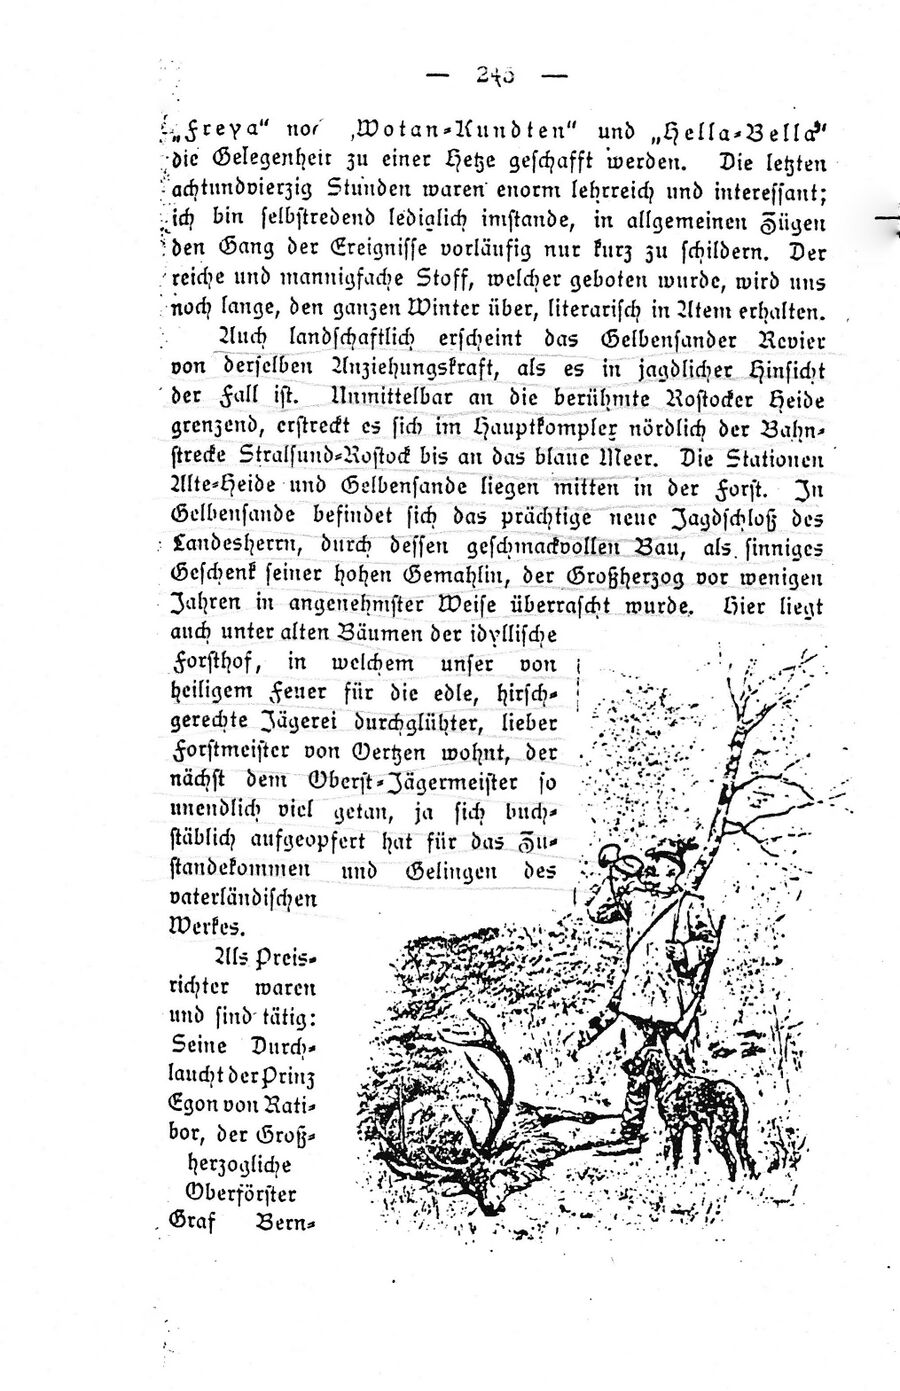 Gelb Forst Ausflug Reichs-Jagdhundeverein 18951 06